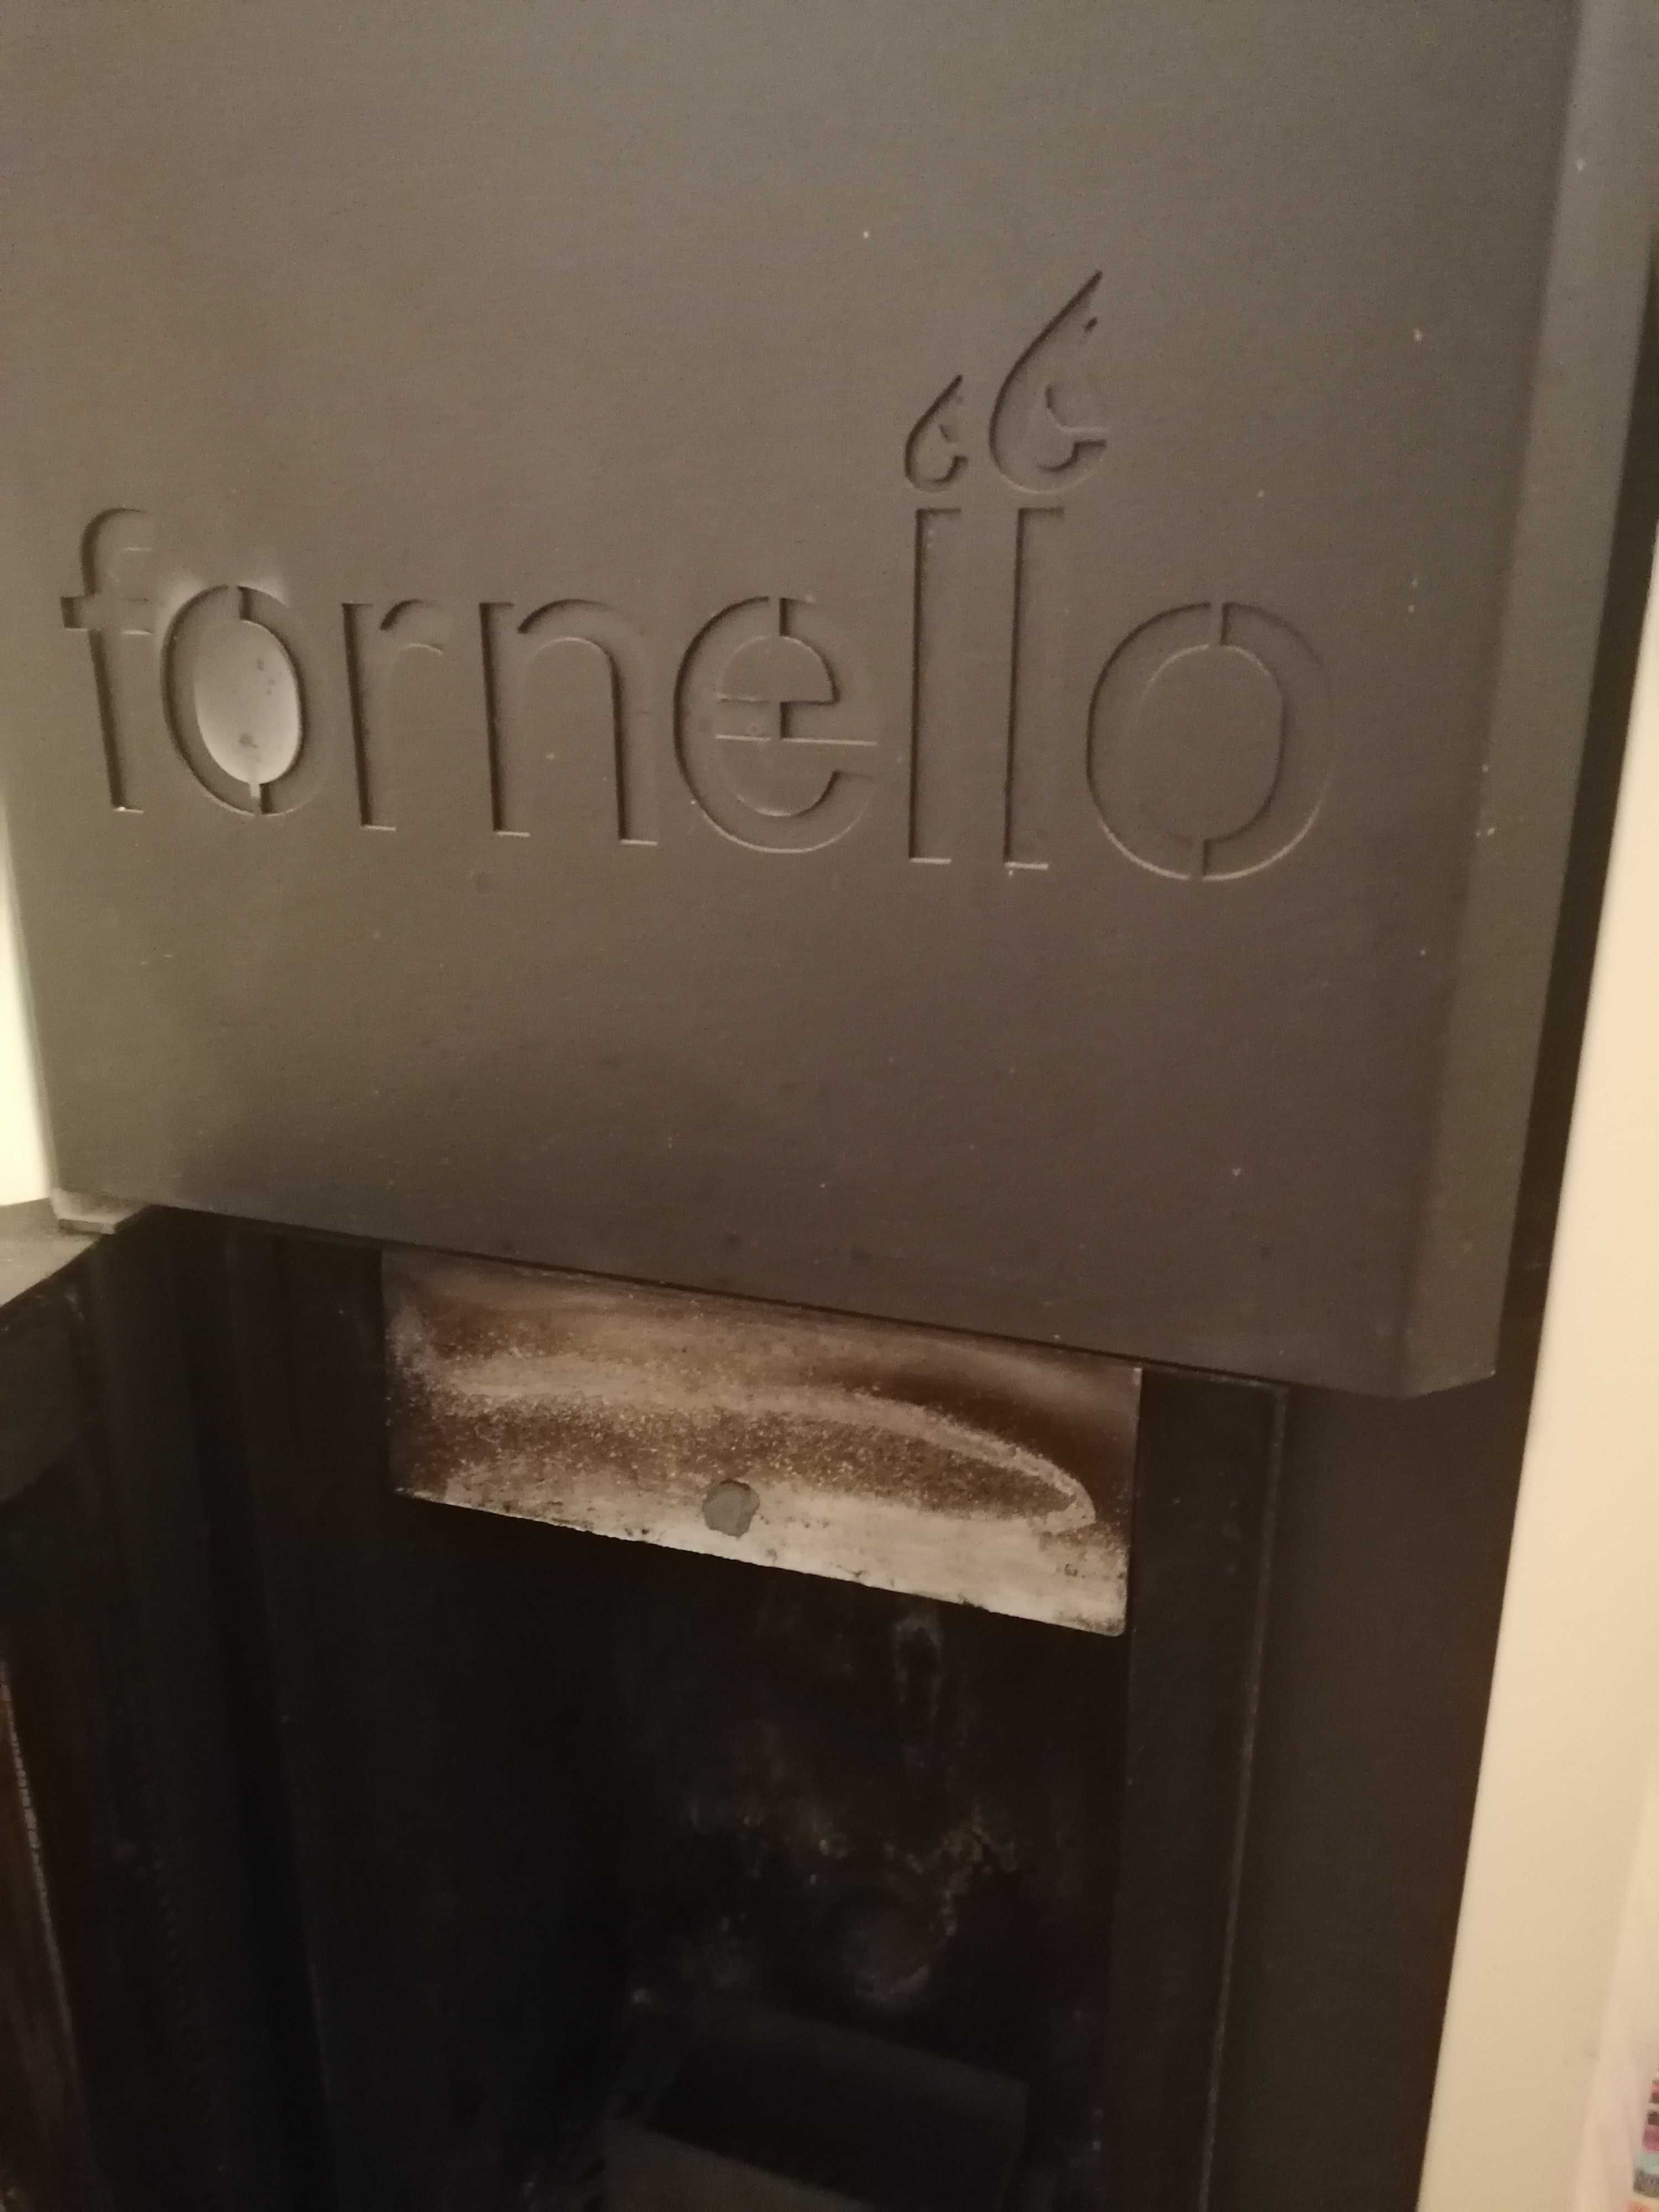 Termosemineu Fornello în garanție de 25 de kw